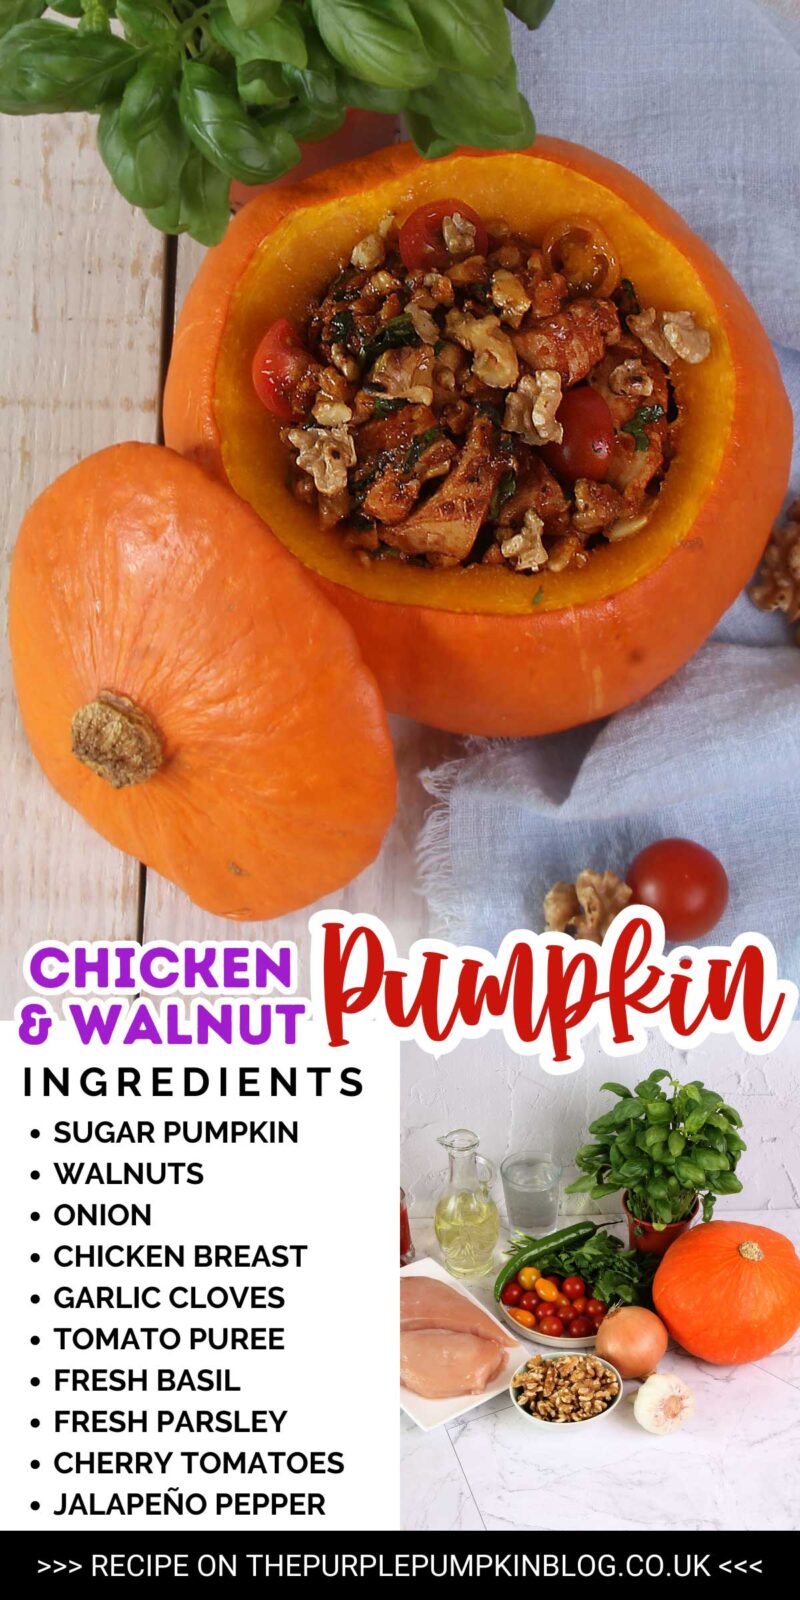 Ingredients Needed for Chicken & Walnut Pumpkin